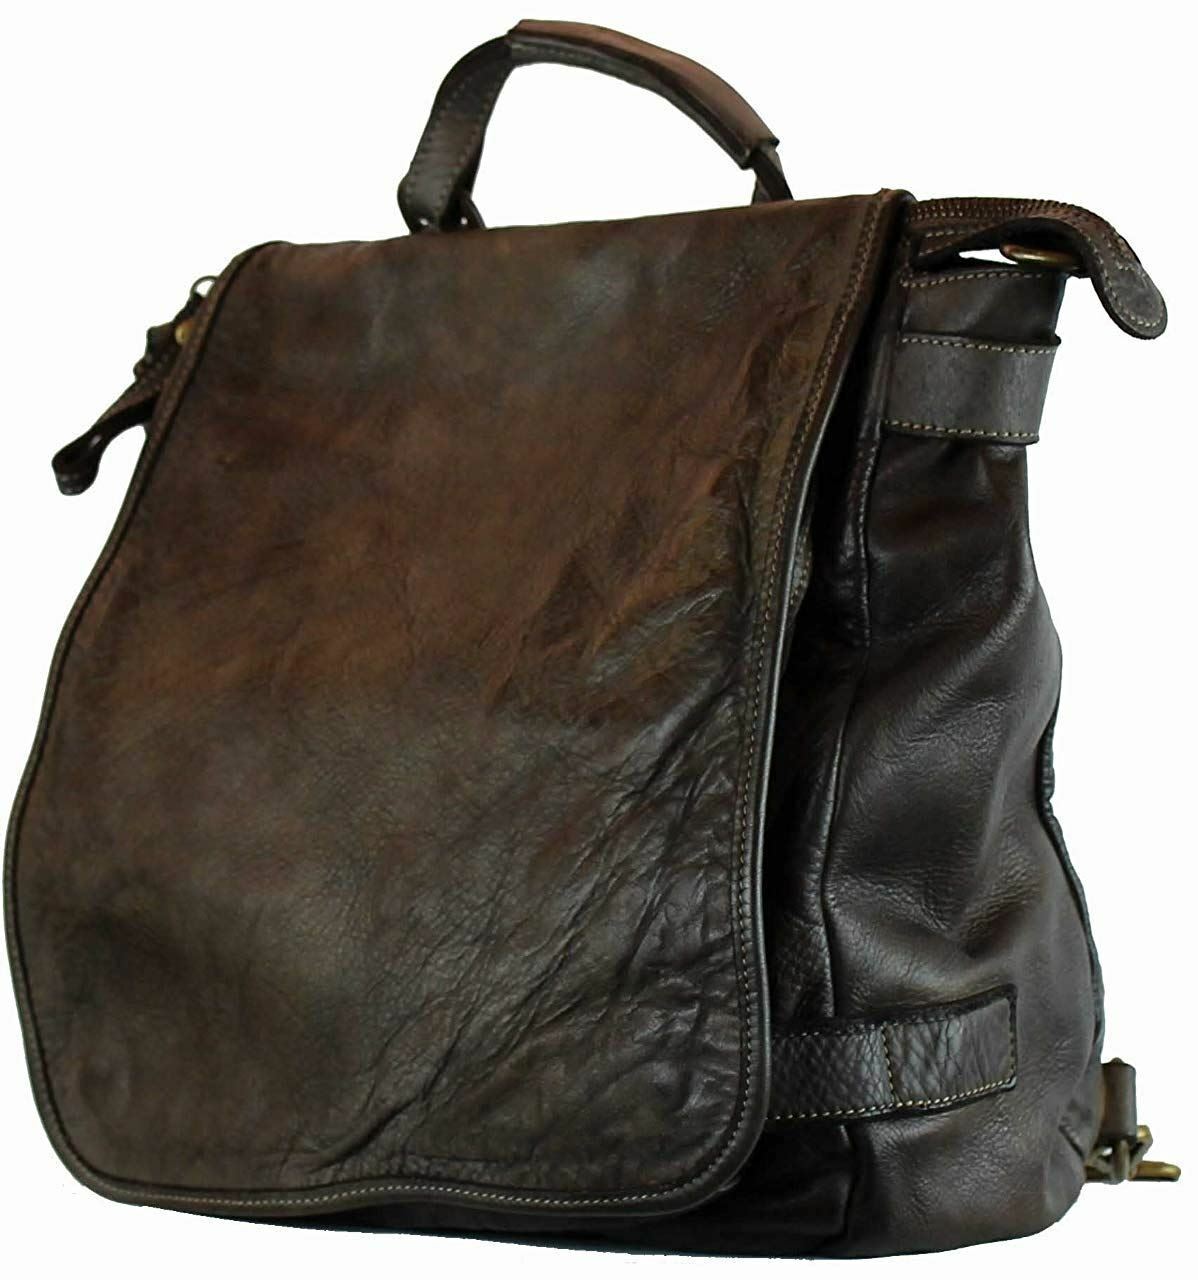 BZNA Bag Anna braun Backpacker Designer Rucksack Ledertasche Damenhandtasche